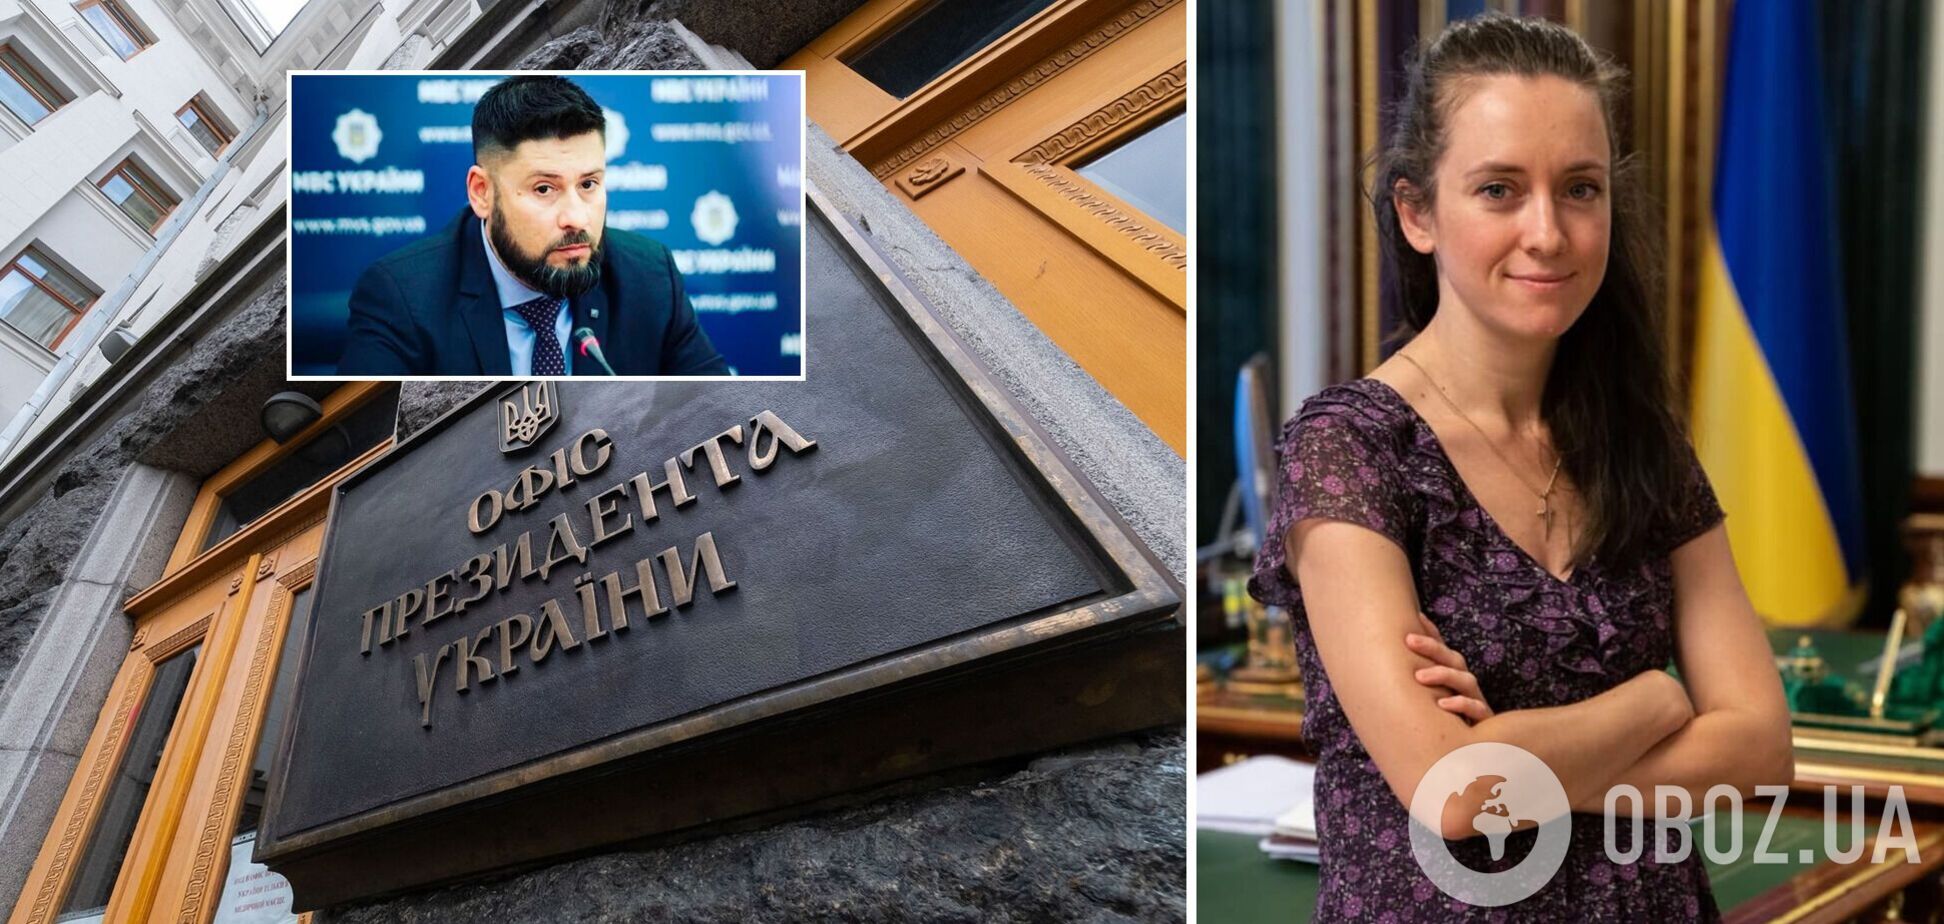 Жену Гогилашвили официально устроили в офис Зеленского после скандала: названа точная дата